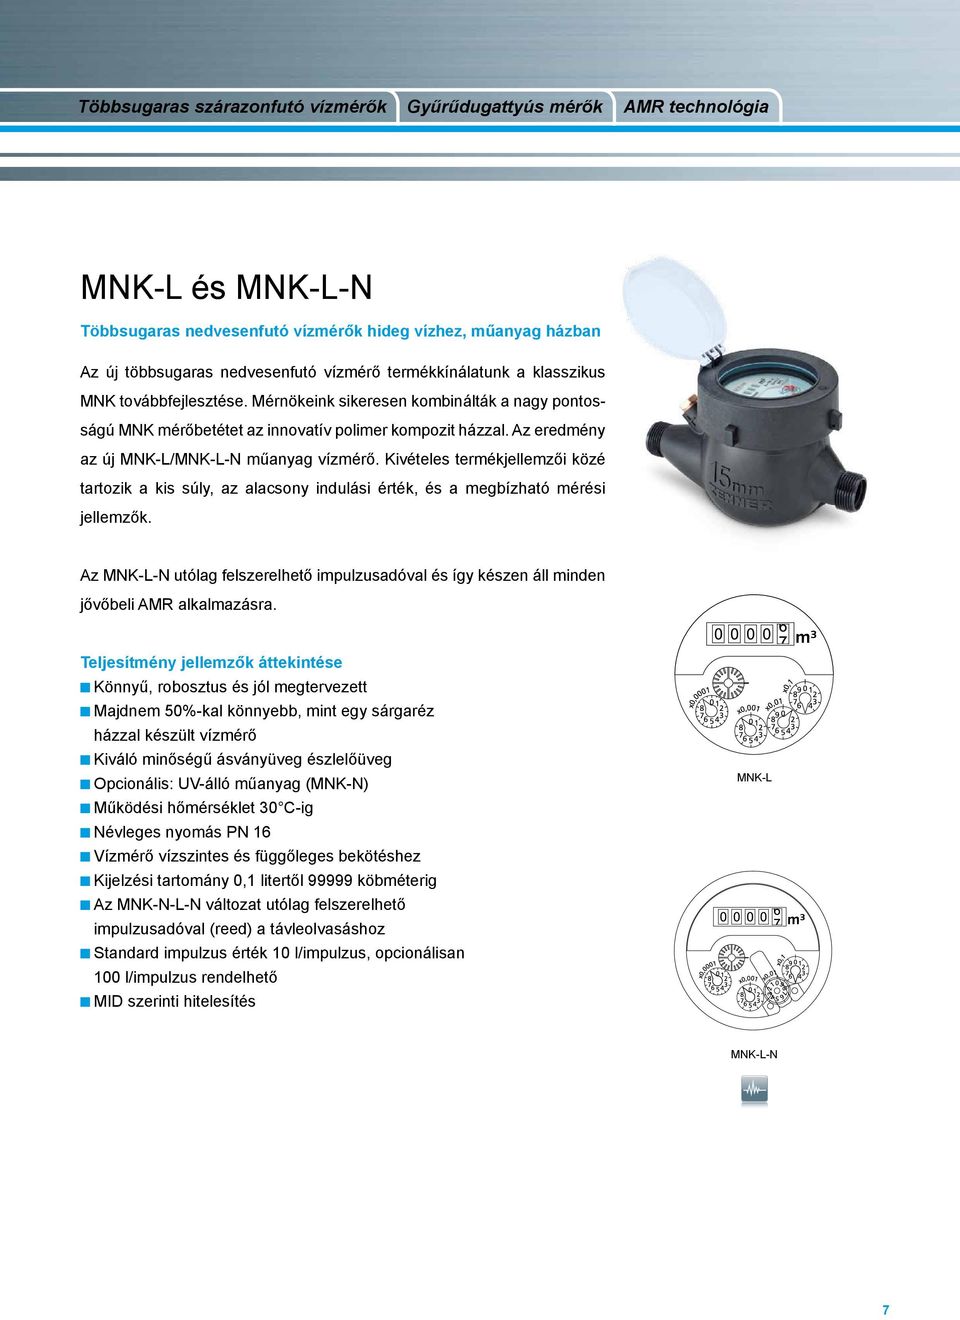 Az eredmény az új MNK-L/MNK-L-N műanyag vízmérő. Kivételes termékjellemzői közé tartozik a kis súly, az alacsony indulási érték, és a megbízható mérési jellemzők.